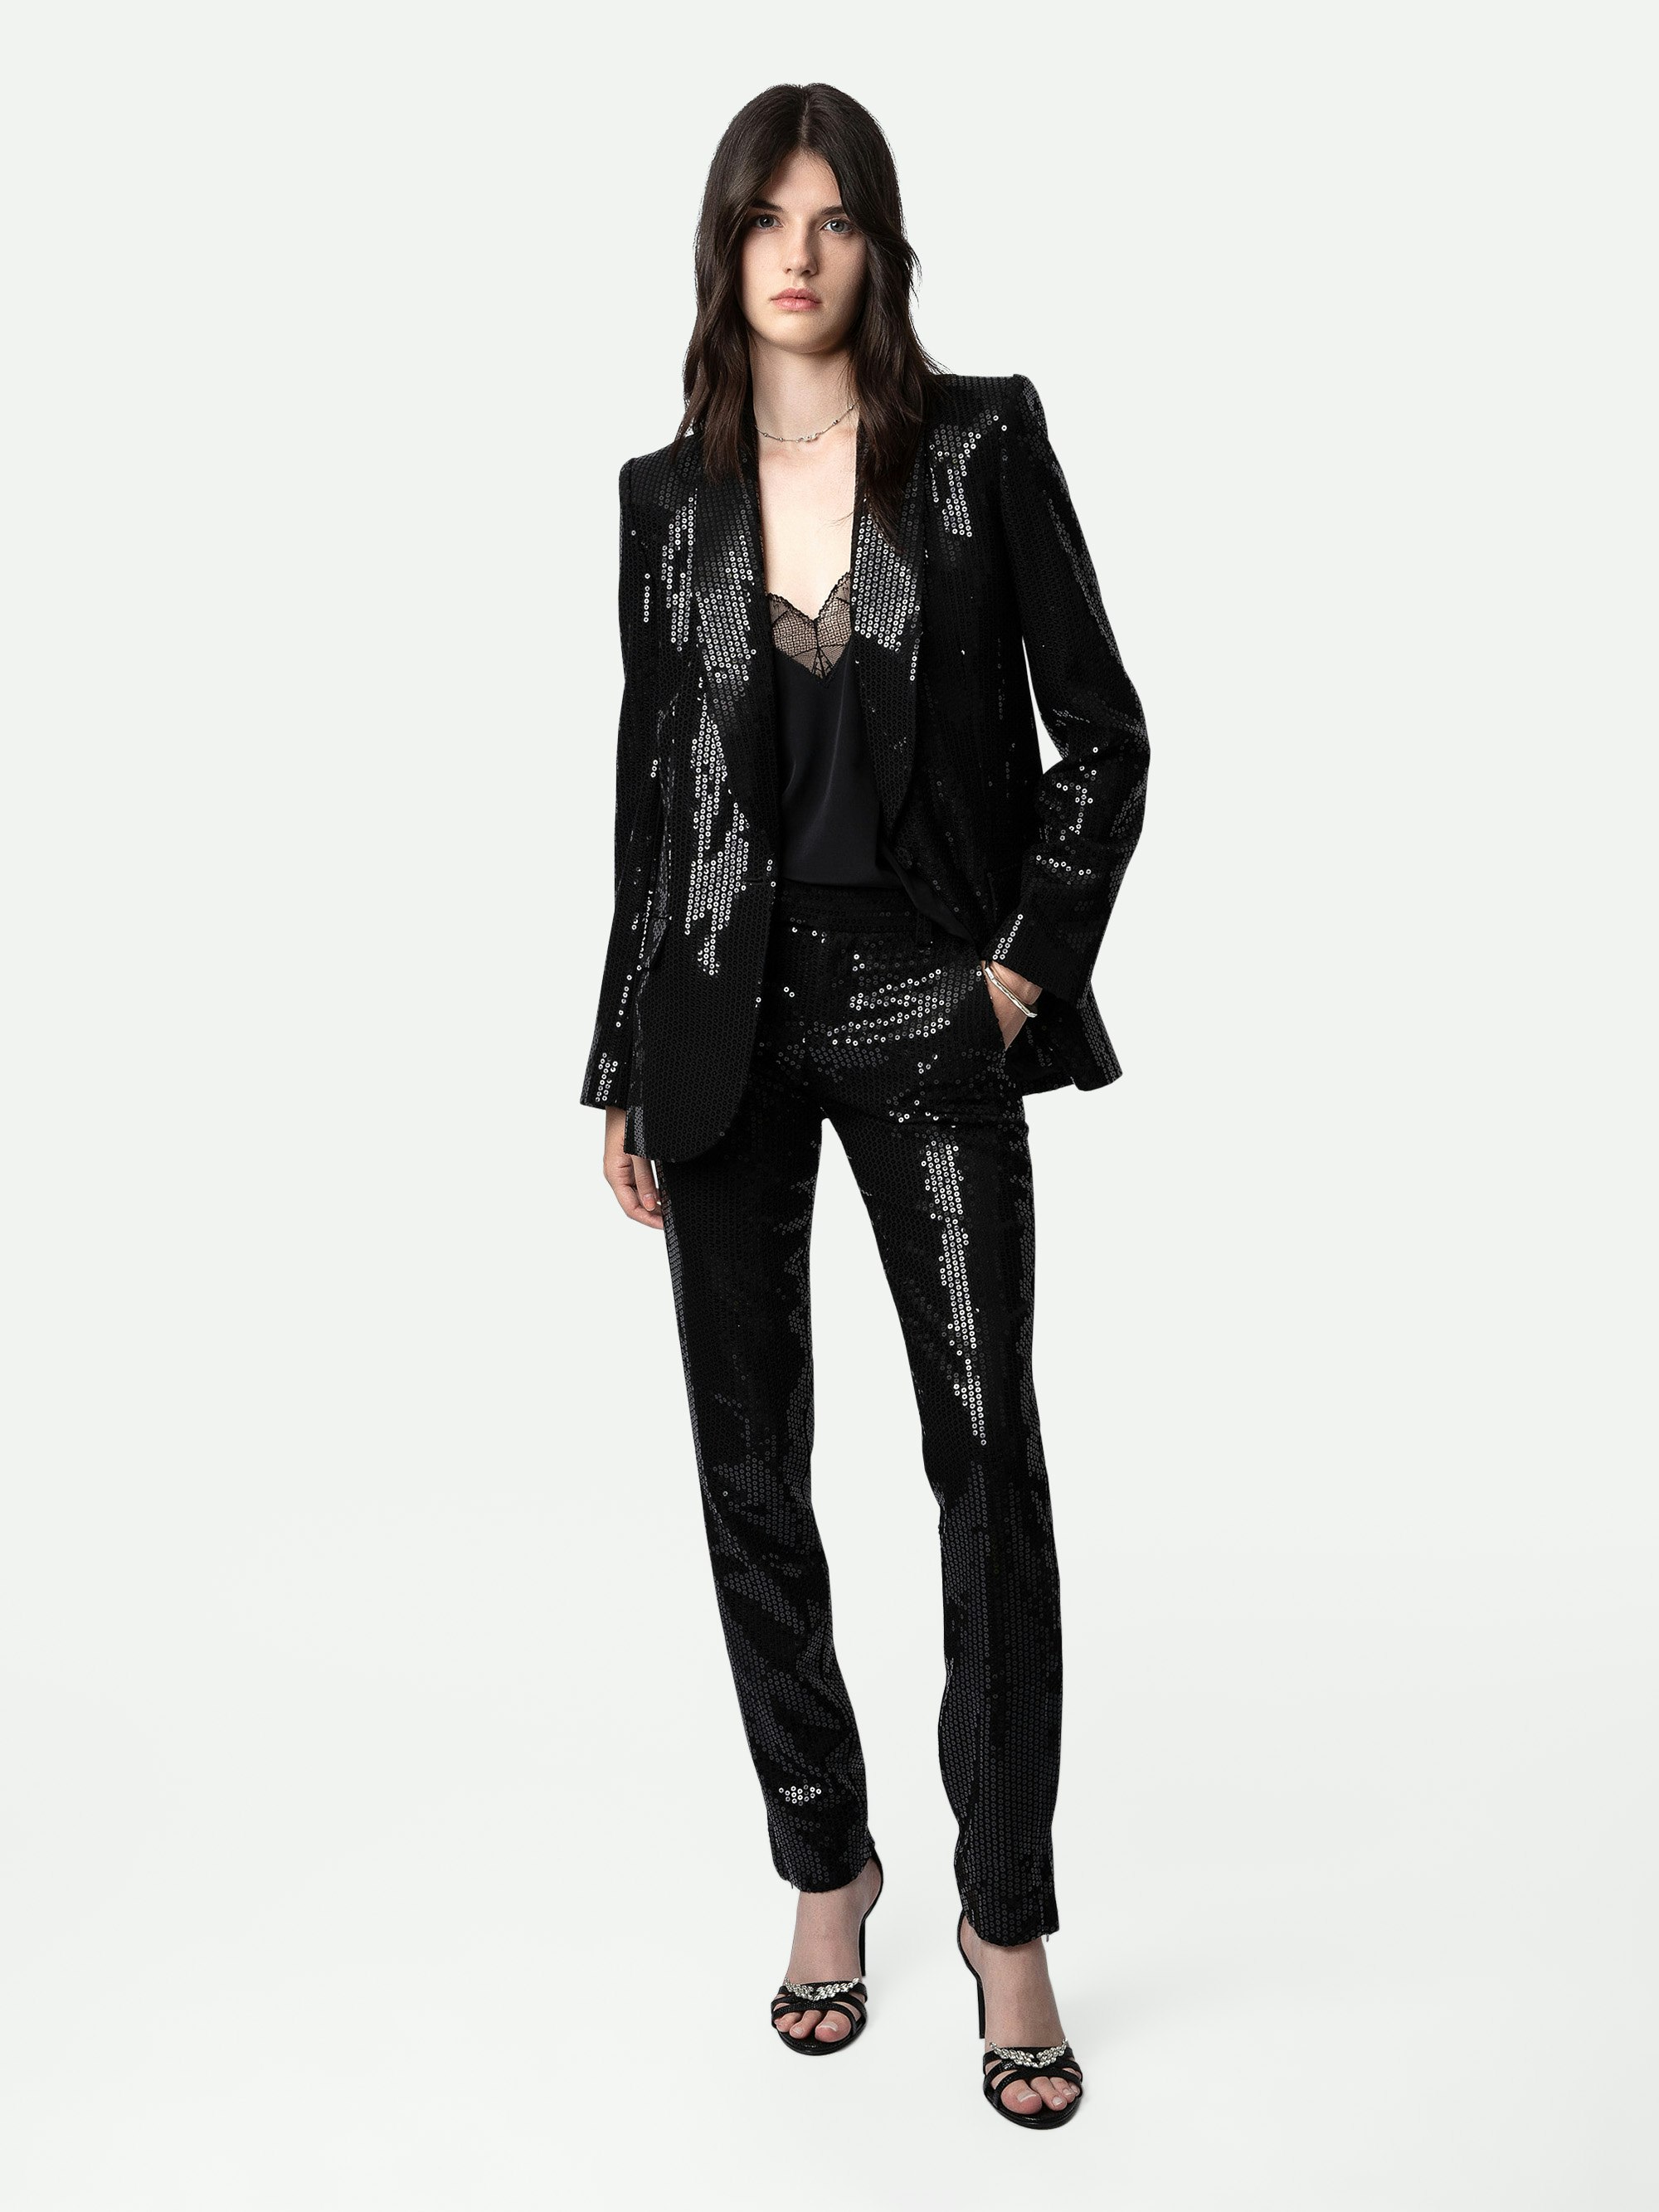 Blazer Vive Sequins - Veste de tailleur blazer noire à sequins, fermeture boutonnée et poches.